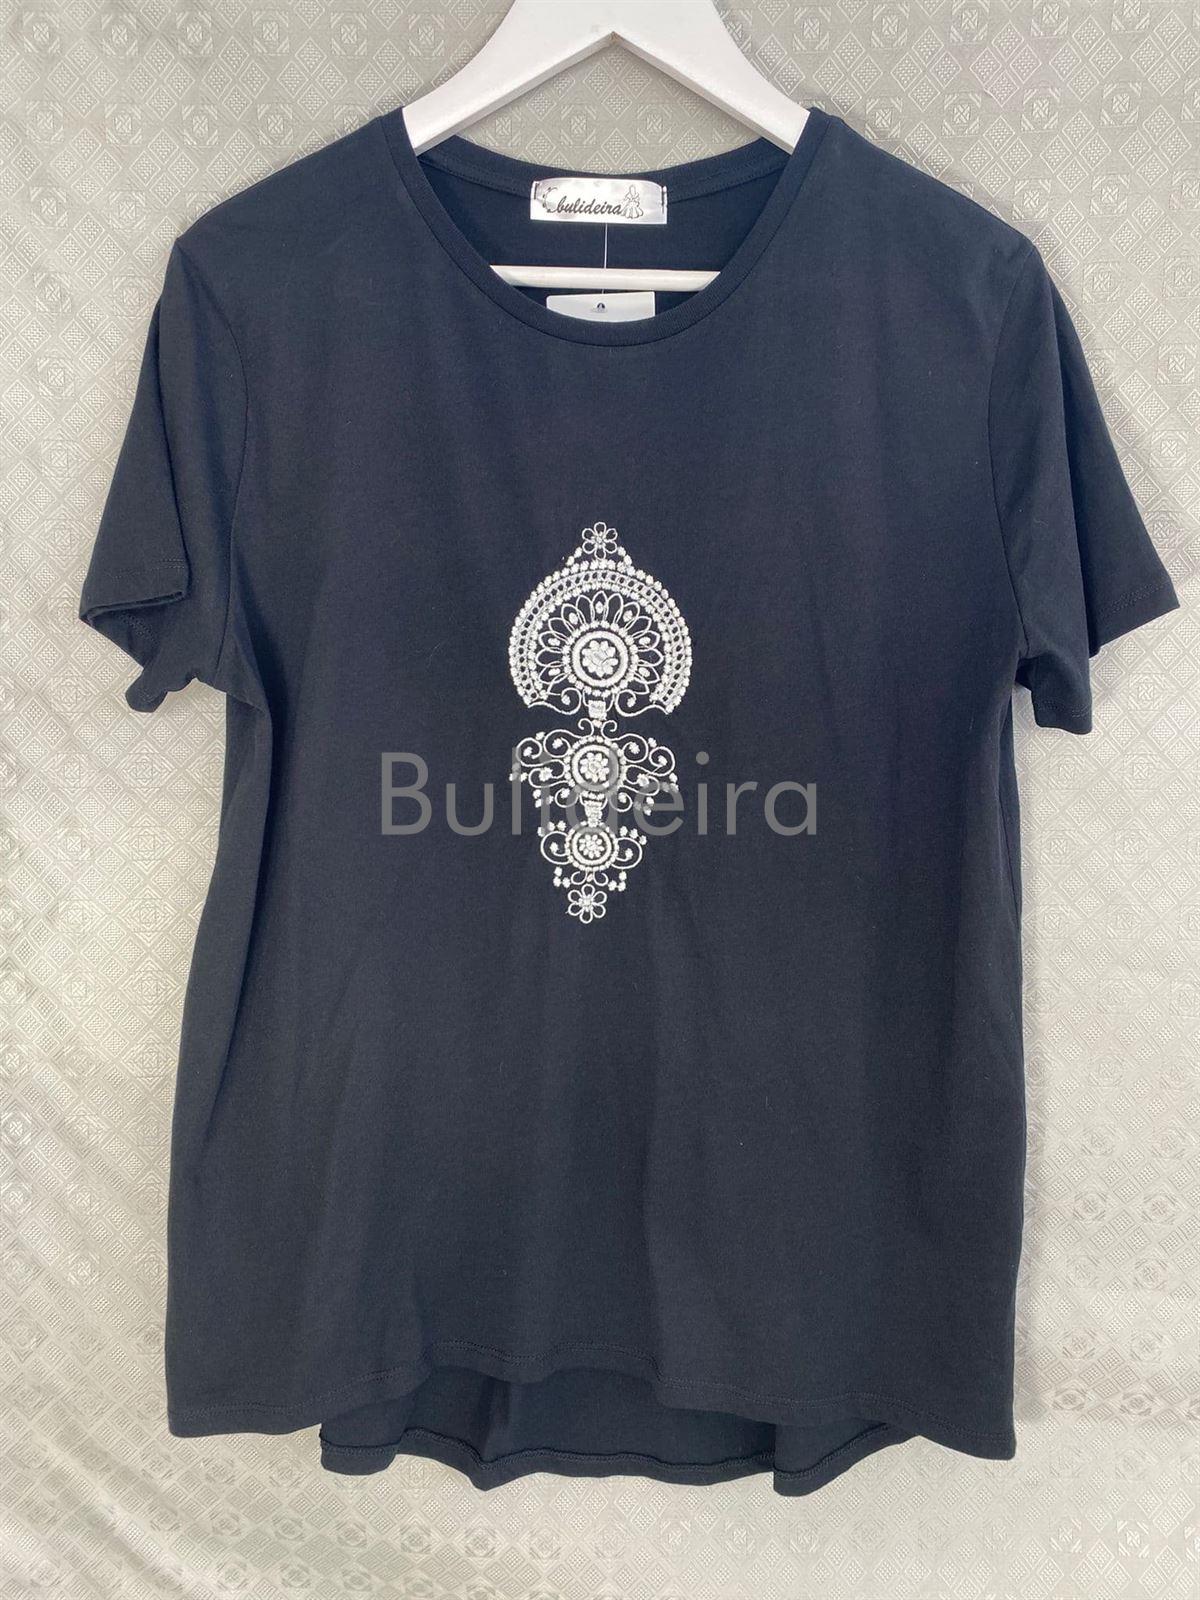 Camiseta negra con sapo en gris - Imaxe 1